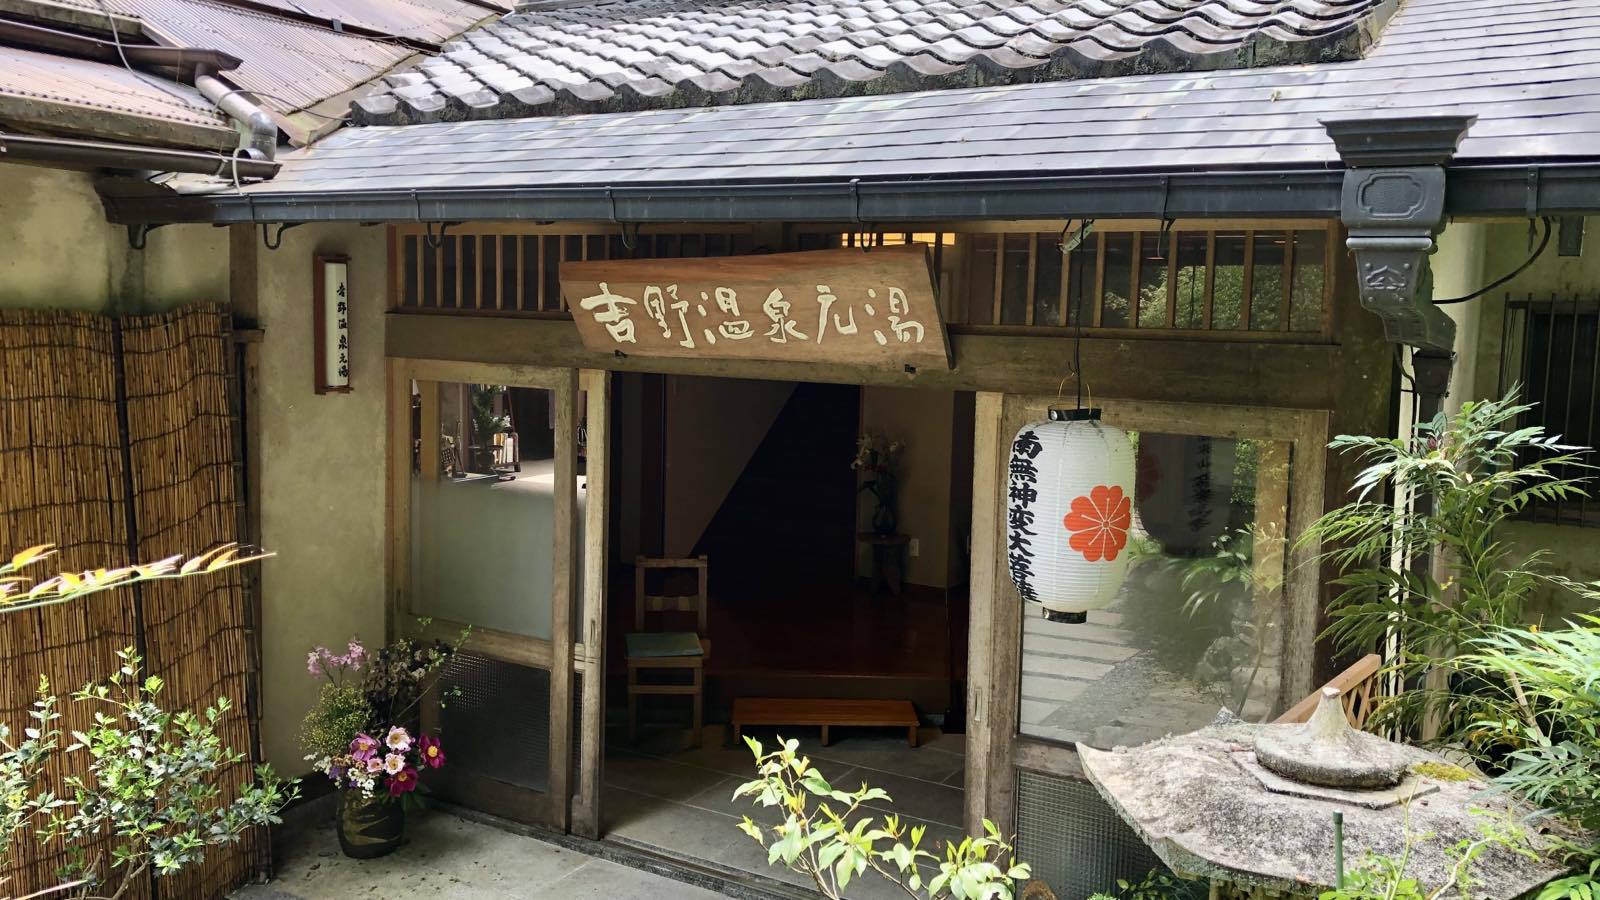 夫婦で吉野山の満開の桜を観たいです。近くでおすすめの宿は？